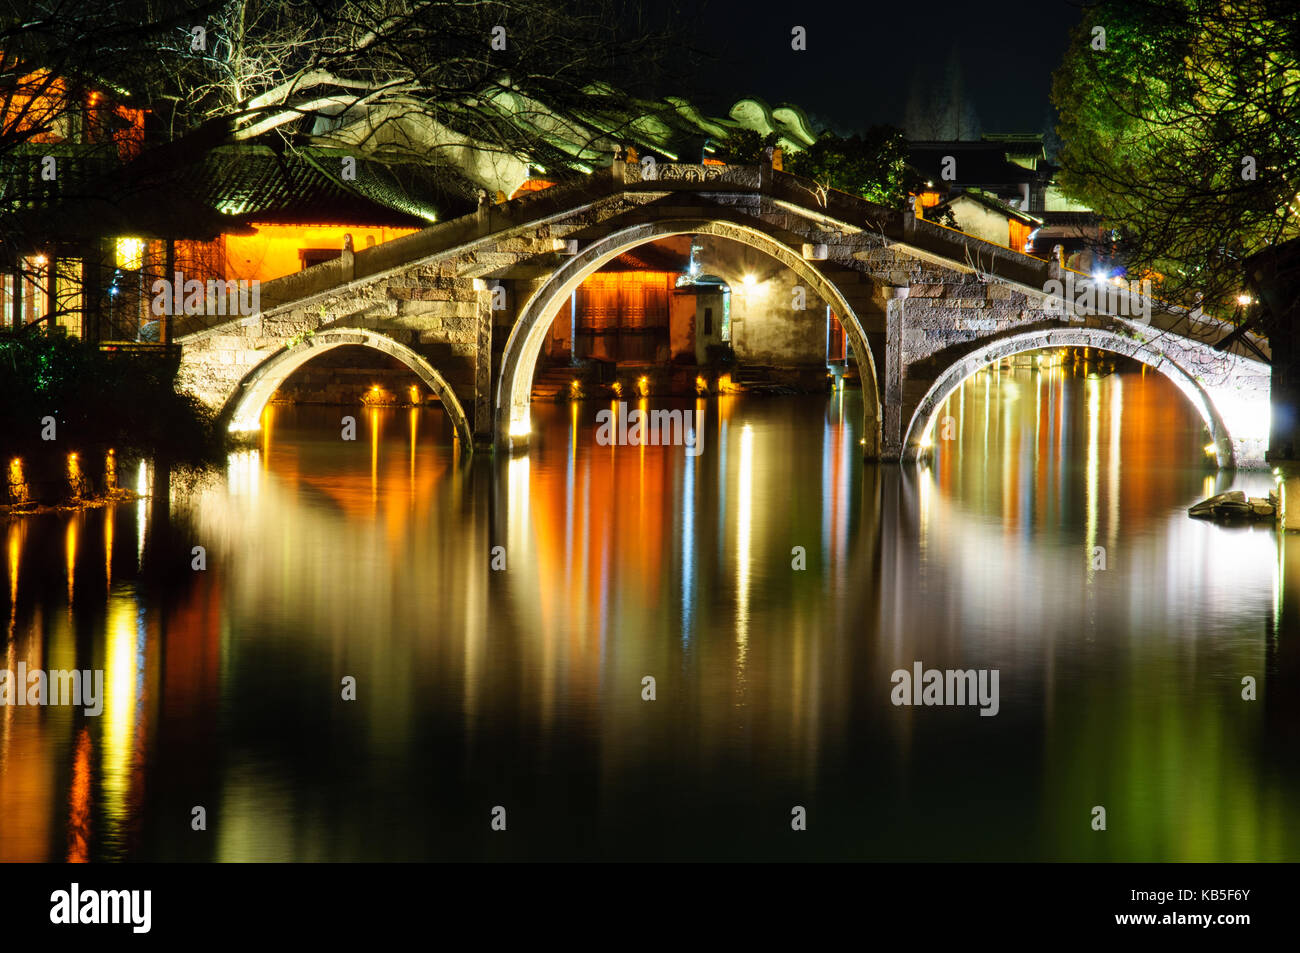 Beleuchtet Brücke mit Wasser Reflexionen am Abend Fotografie an Wuzhen in China Stockfoto